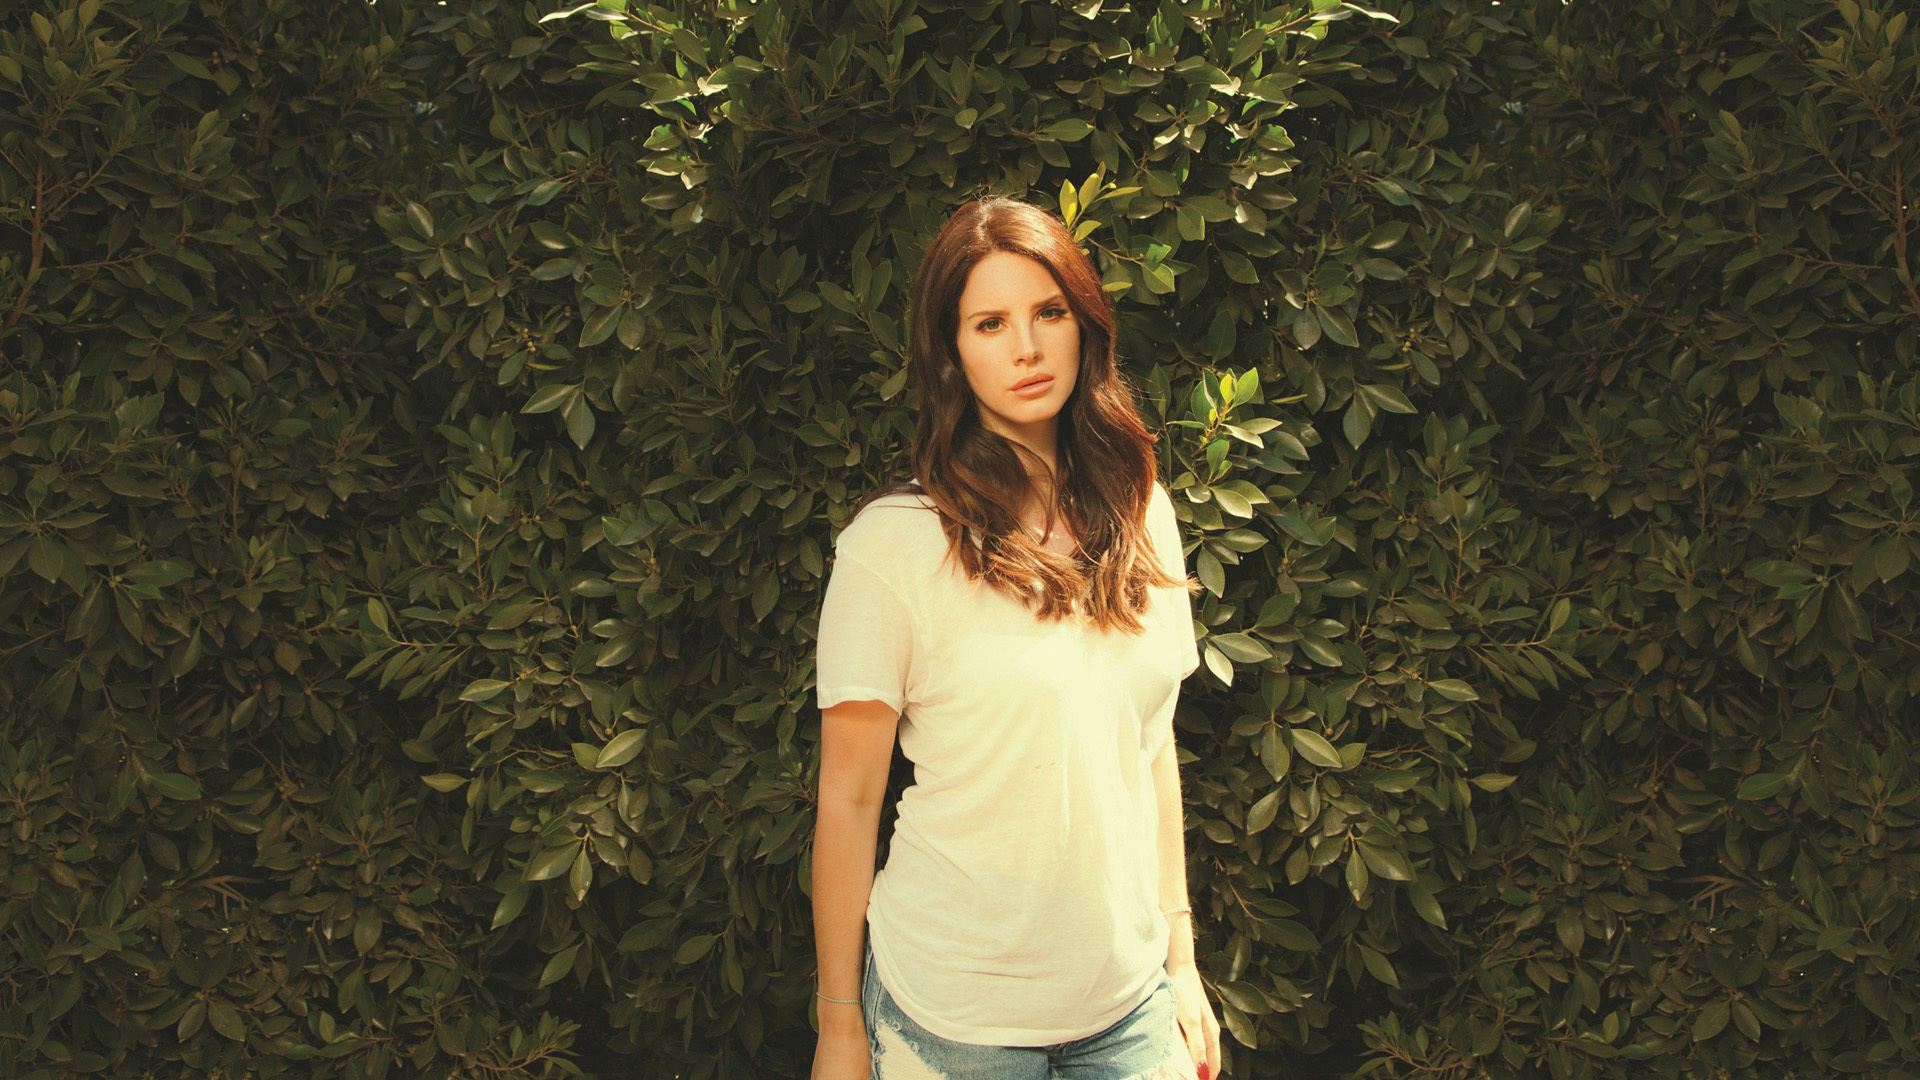 Lana Del Rey Wallpaper Hq